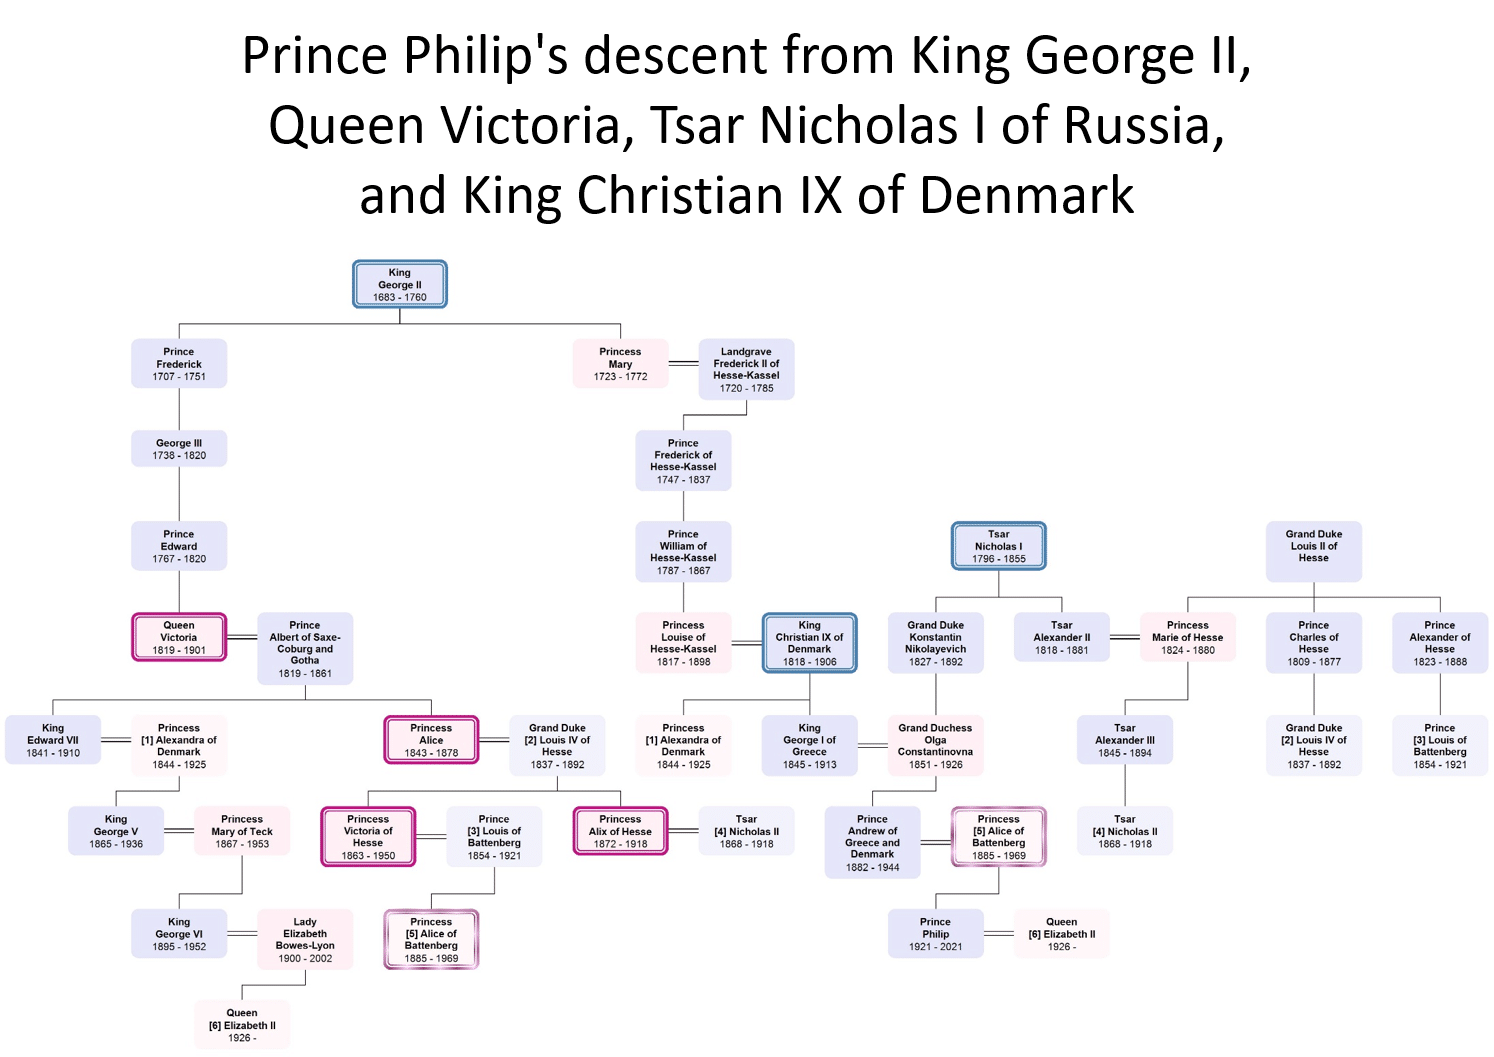 Carolines Folie zeigt die Verbindungen der königlichen Familie von Prinz Philip